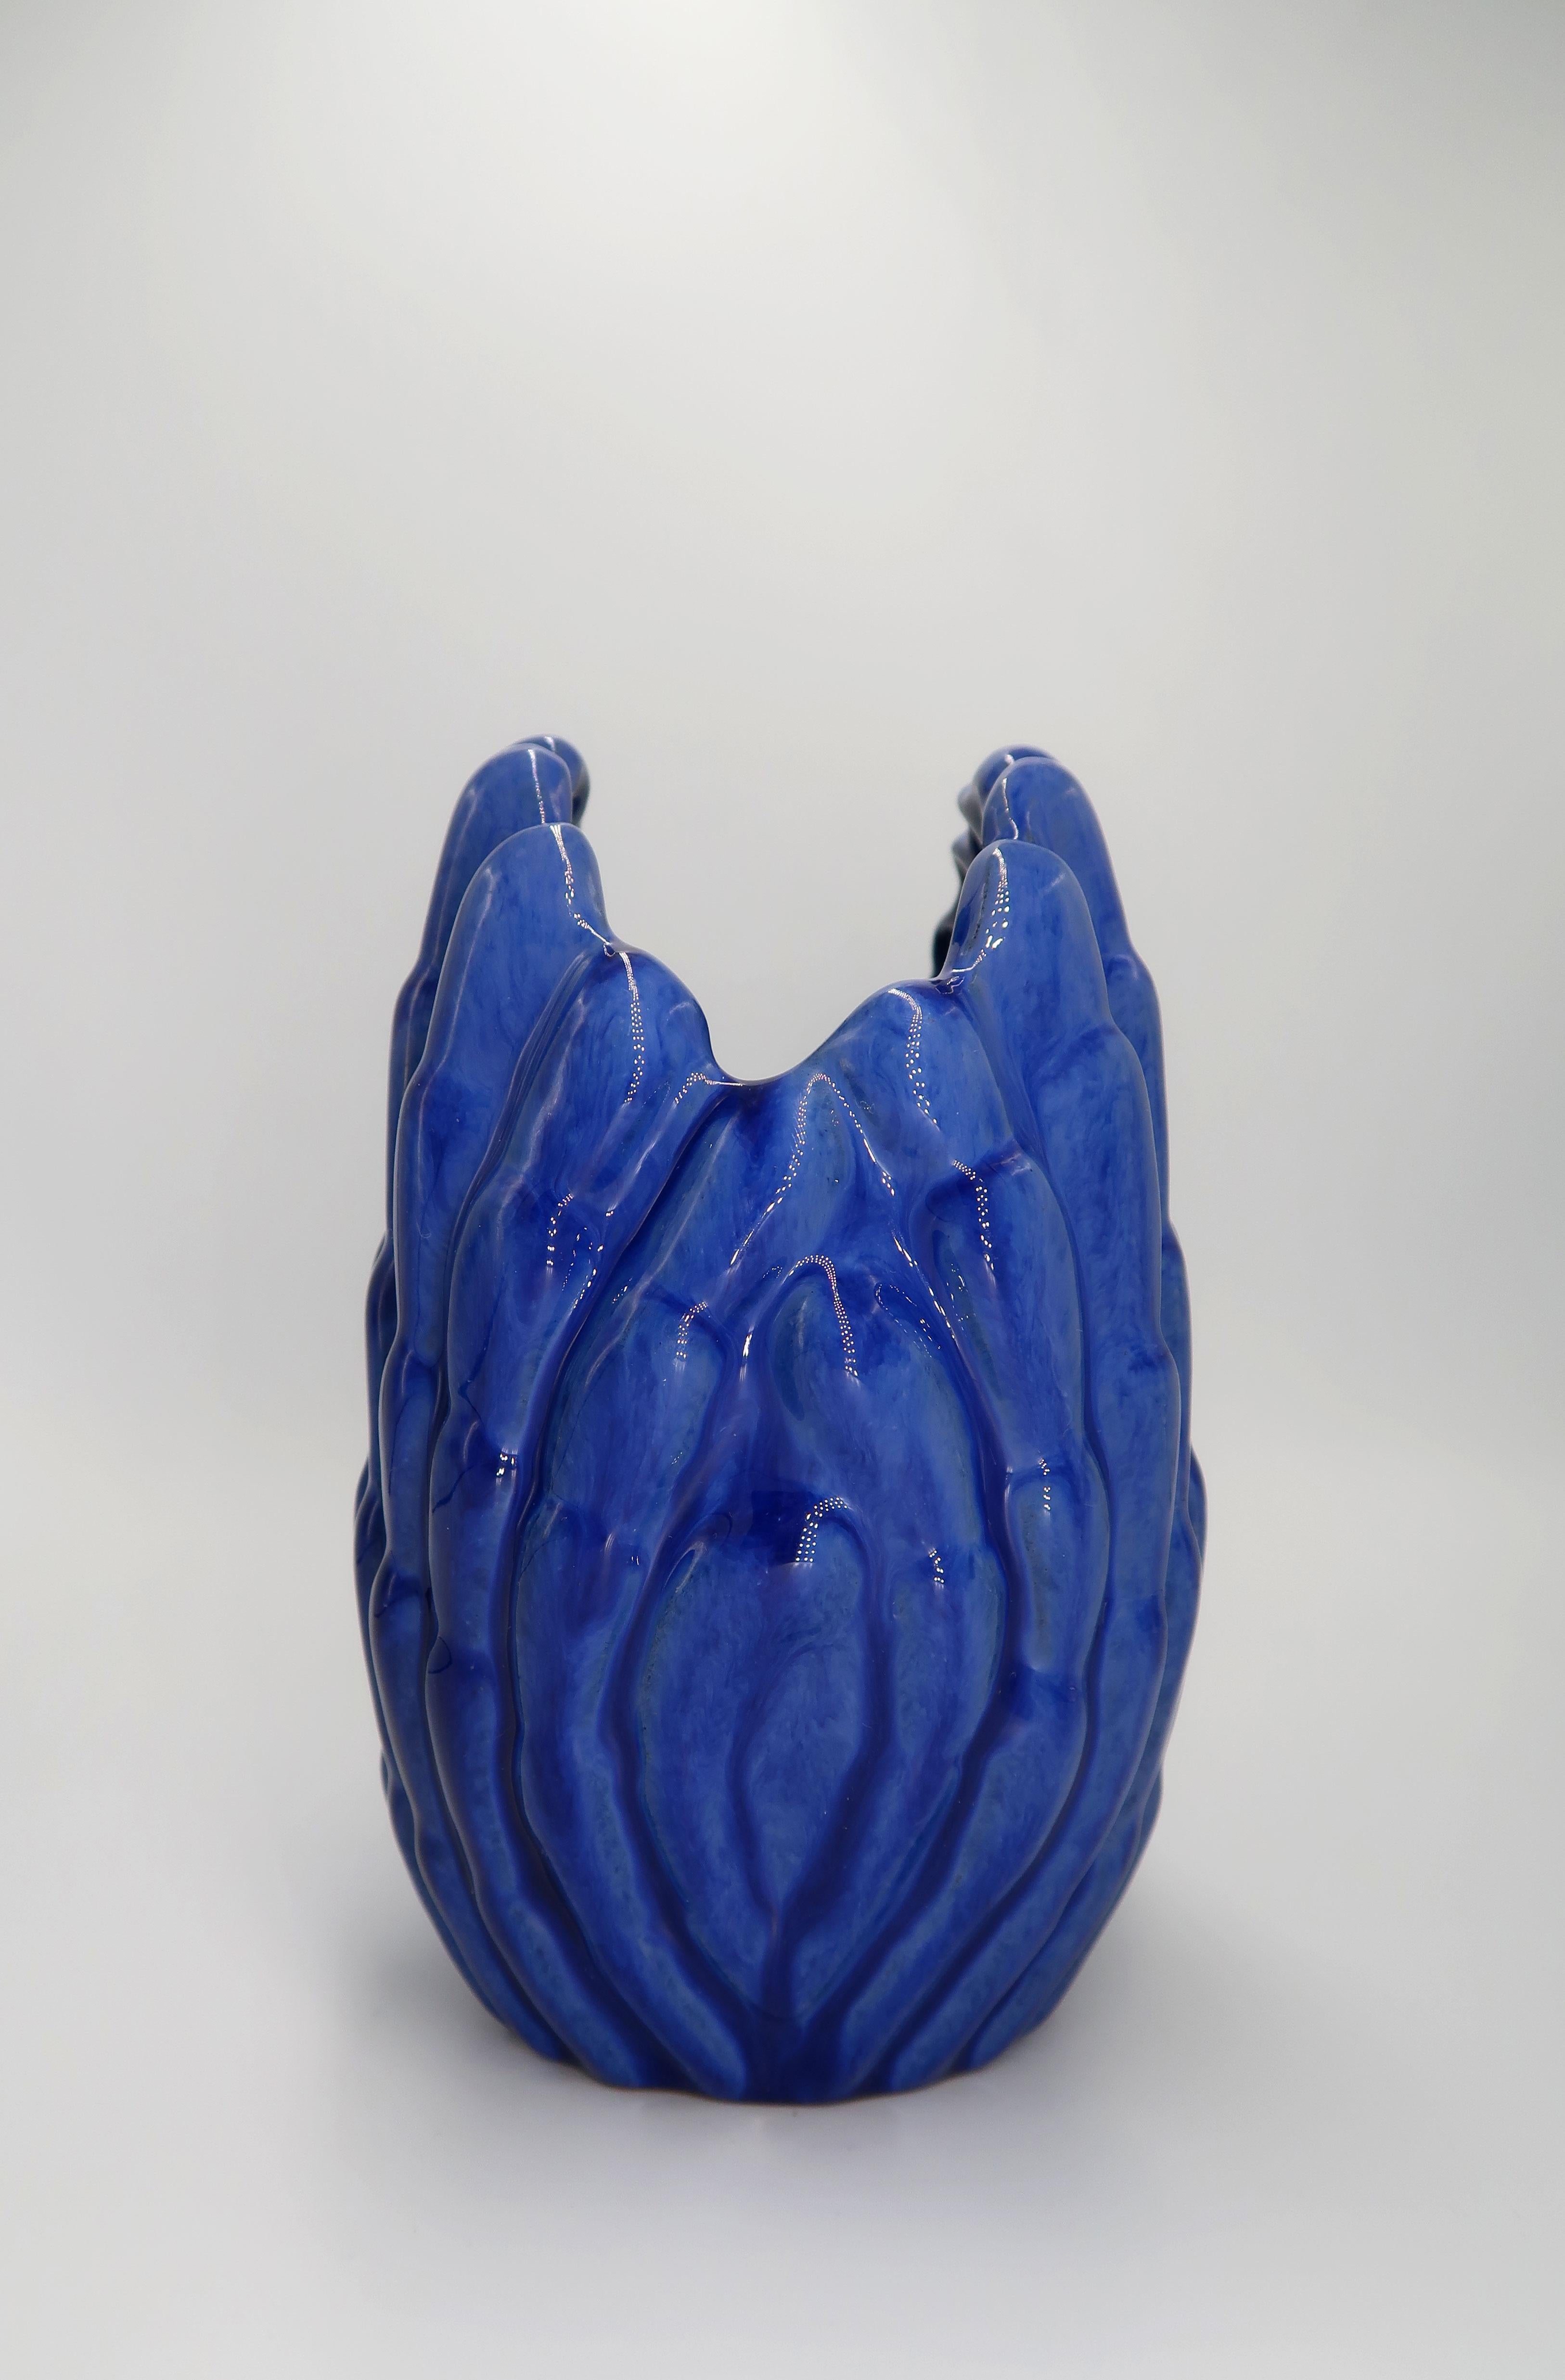 Swedish 1940s Art Deco Cobalt Blue Shell Shaped Vase, Vicke Lindstrand, Sweden For Sale